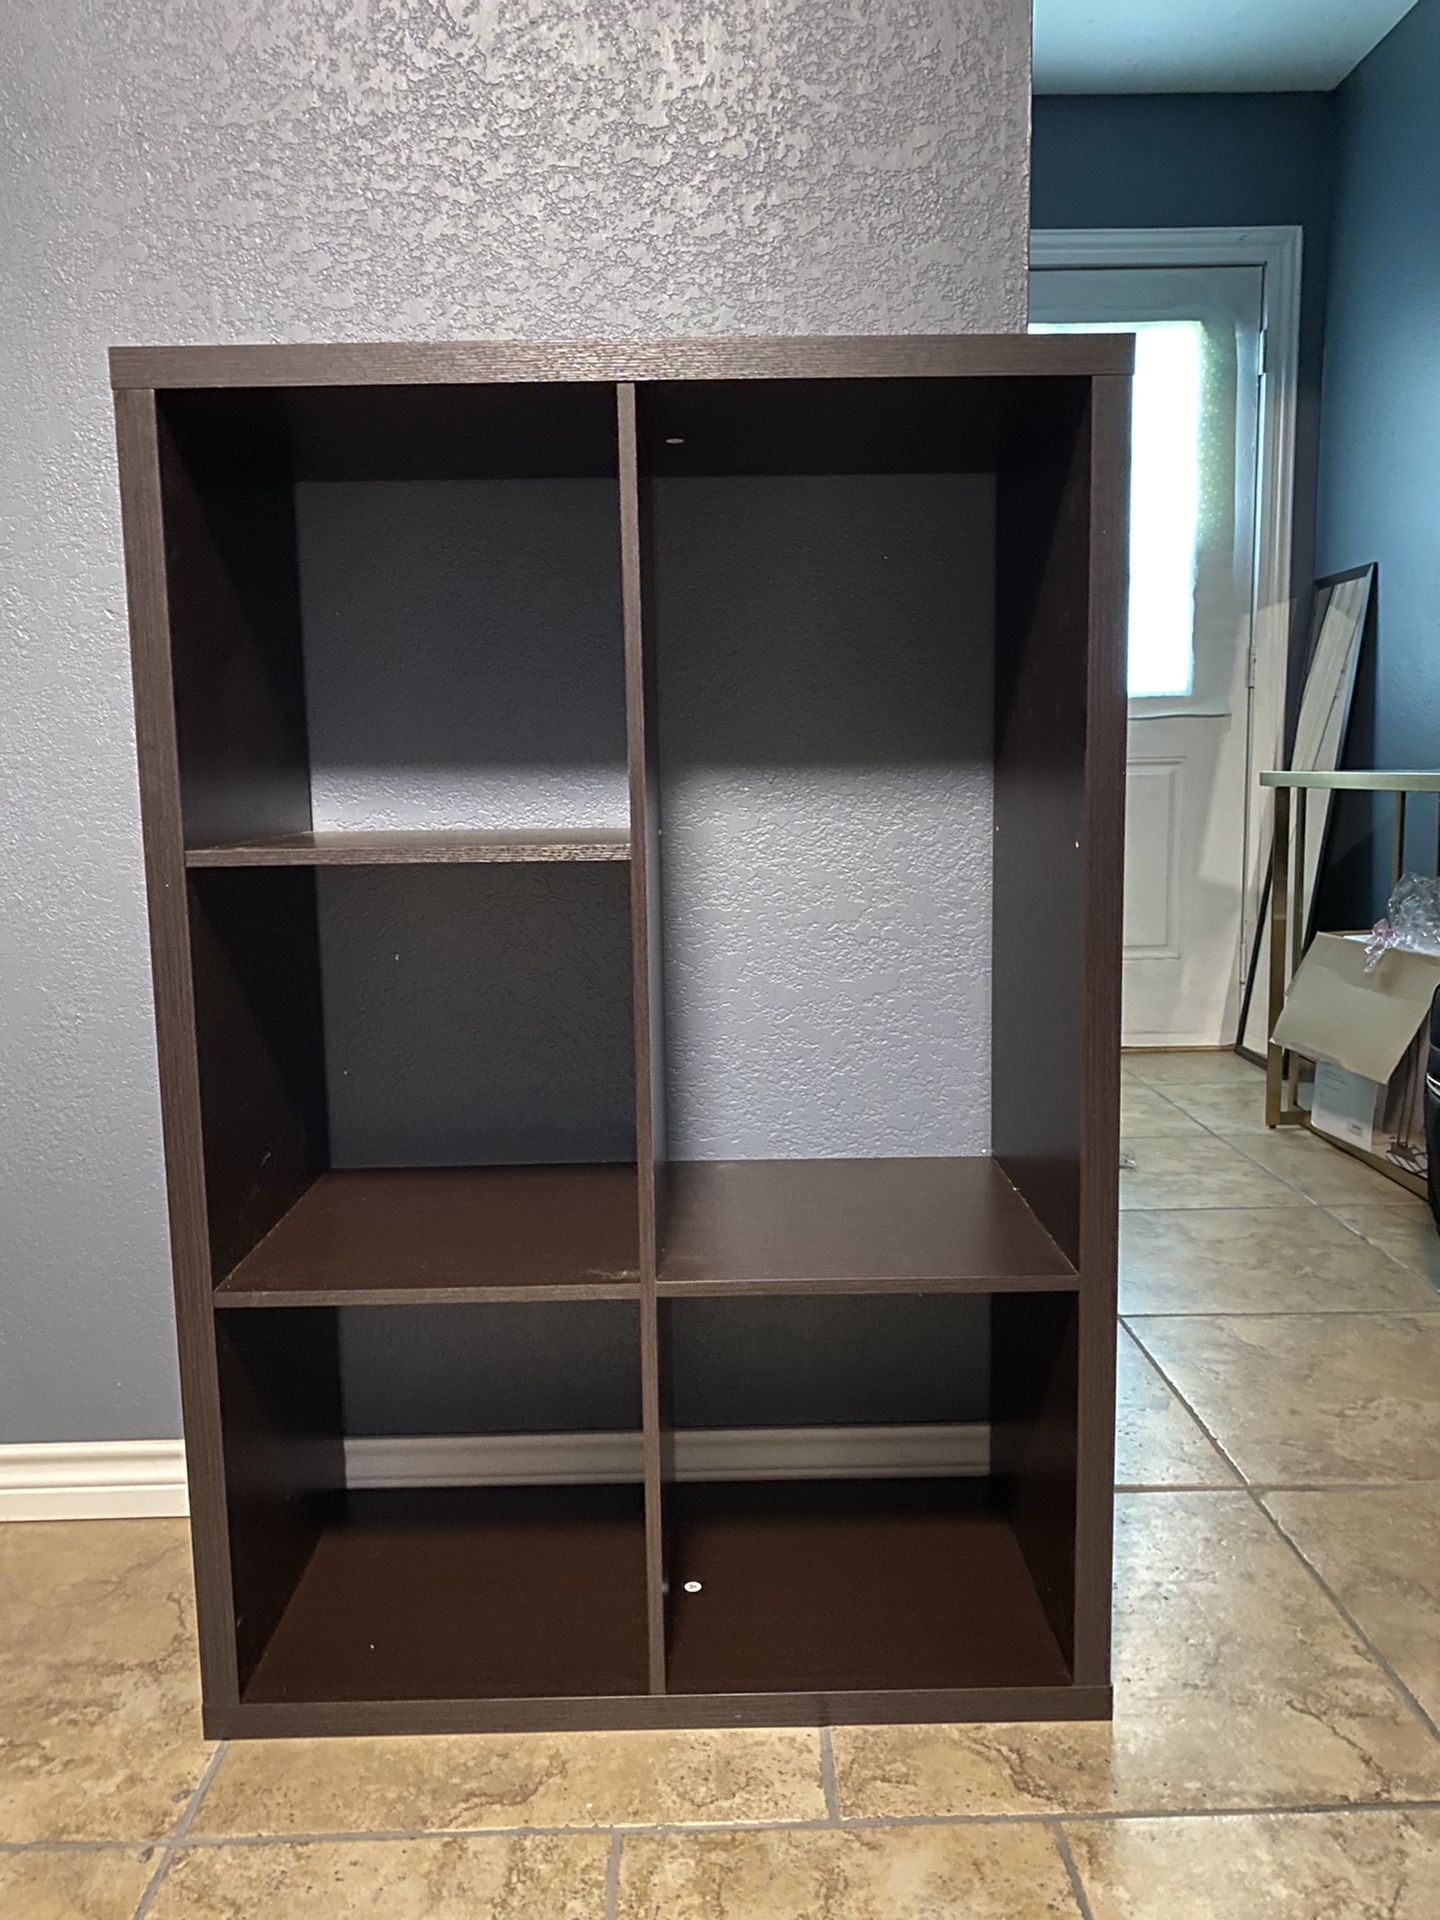 Cube Organizer Shelf 